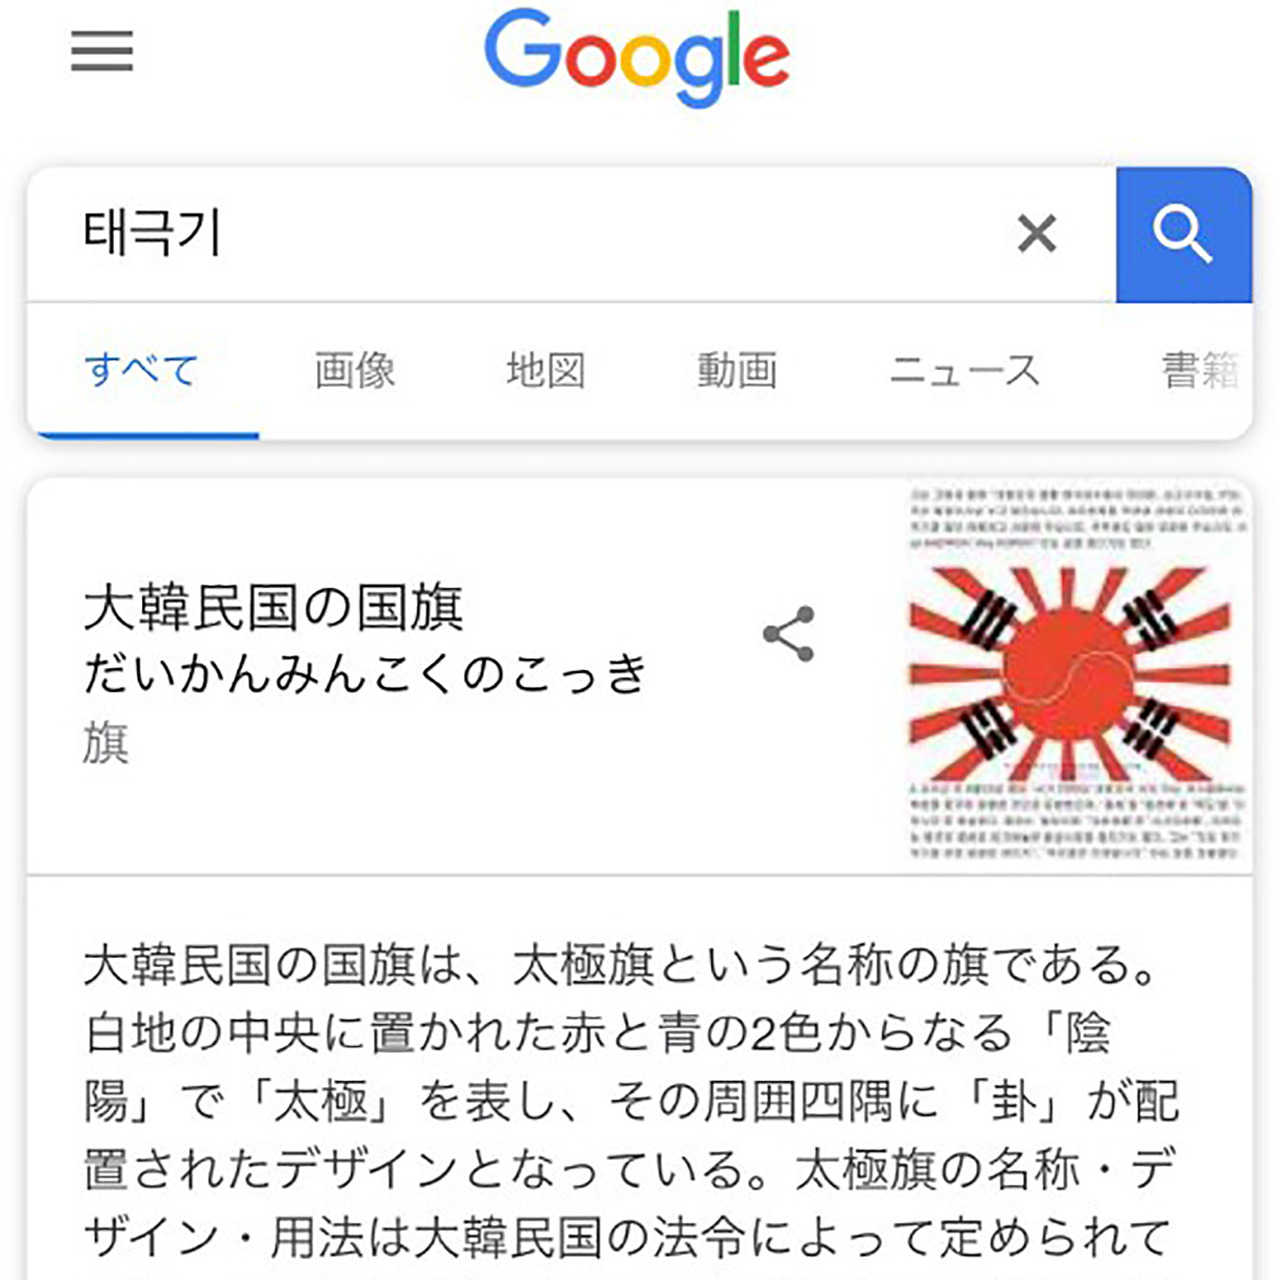 일본 구글에서 '태극기' 검색하면 '전범기' 합성된 국기 나와